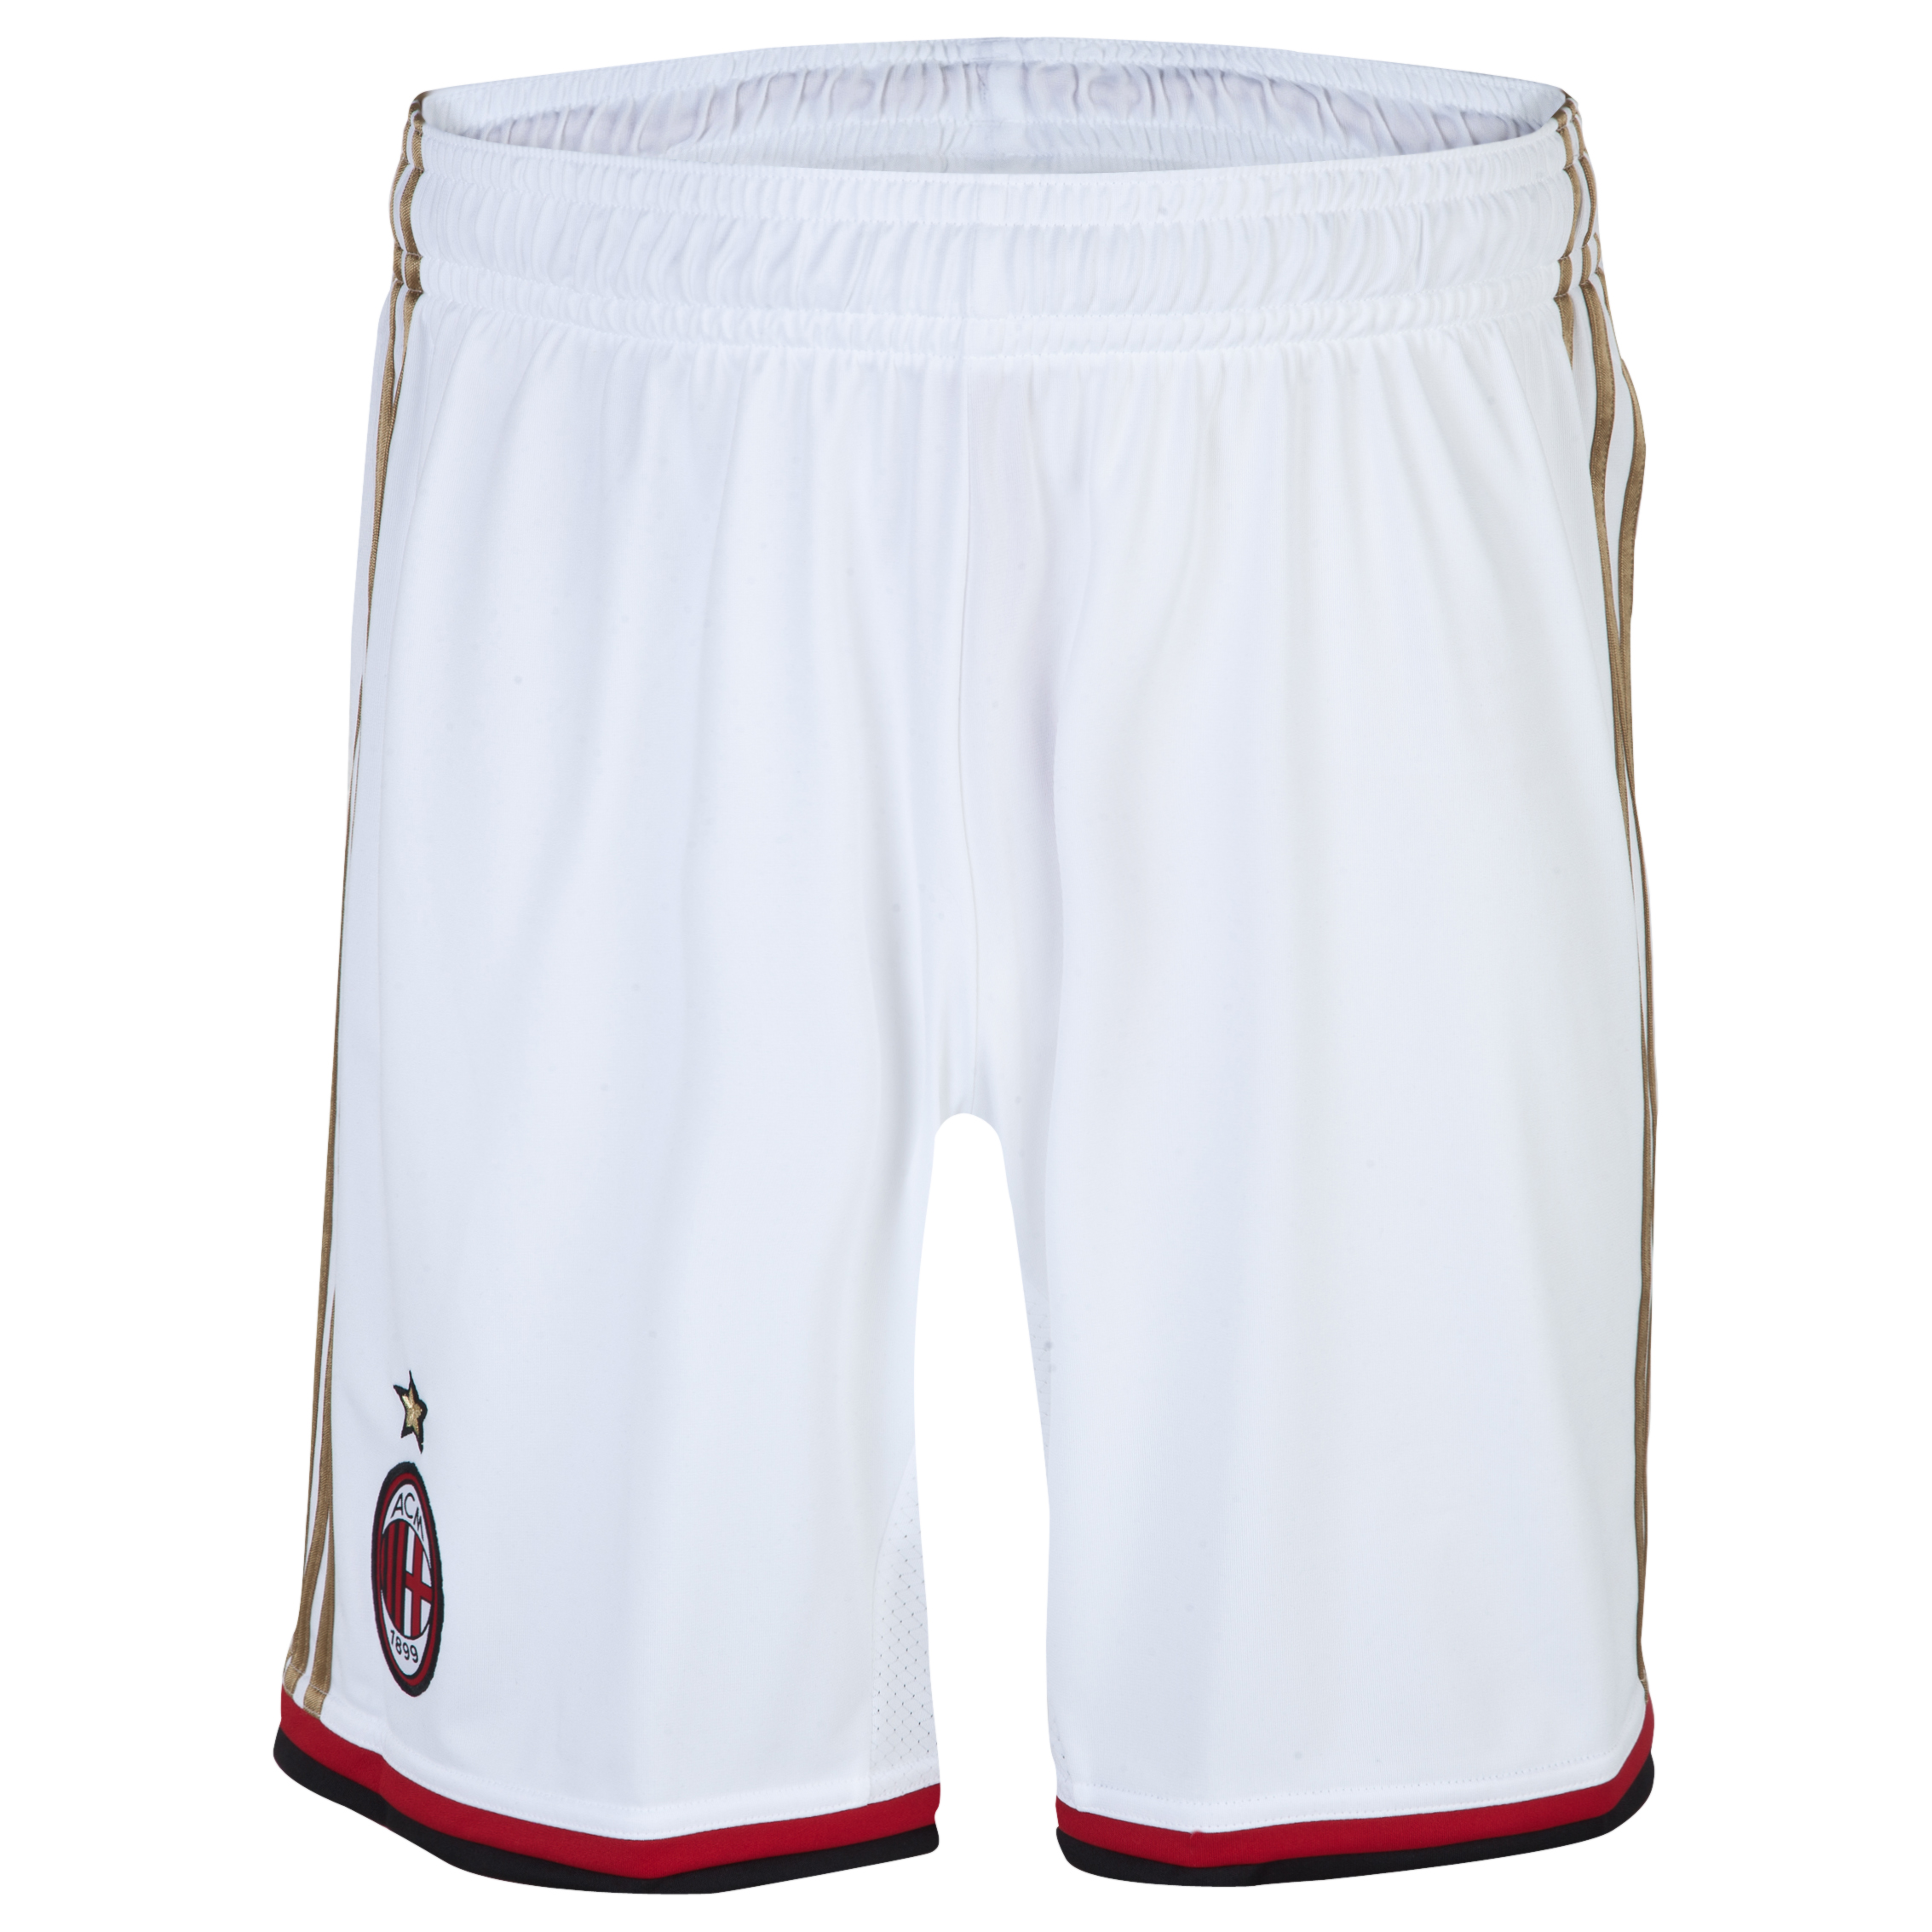 AC Milan Home/Away Shorts 2013/14